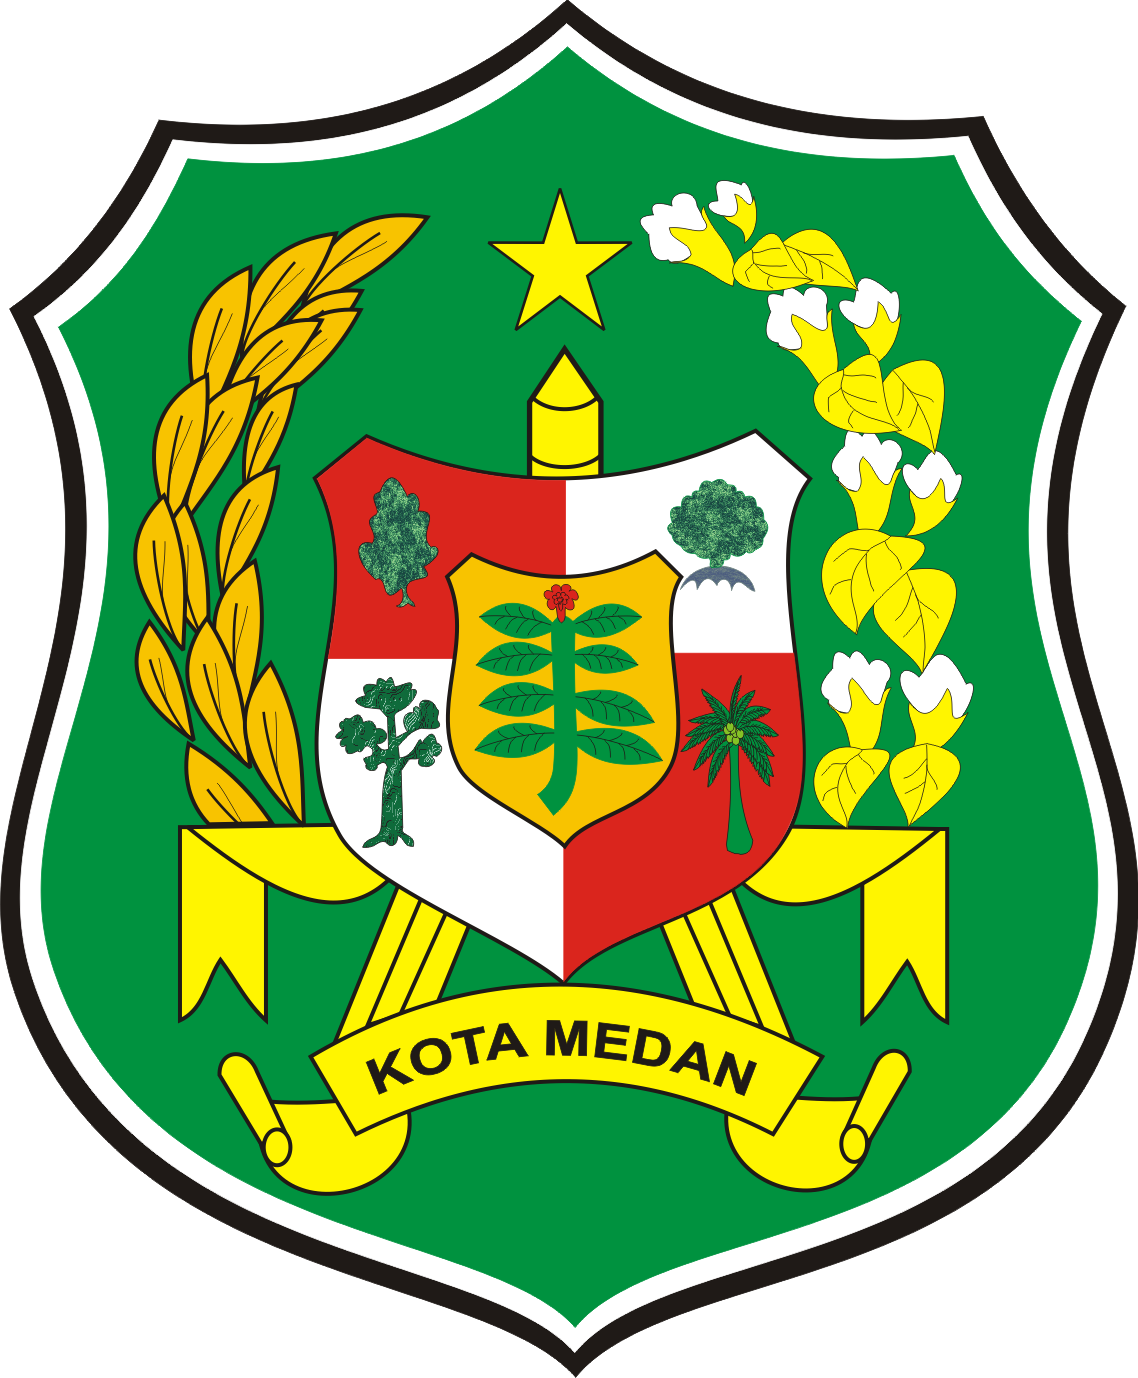 Kota Medan